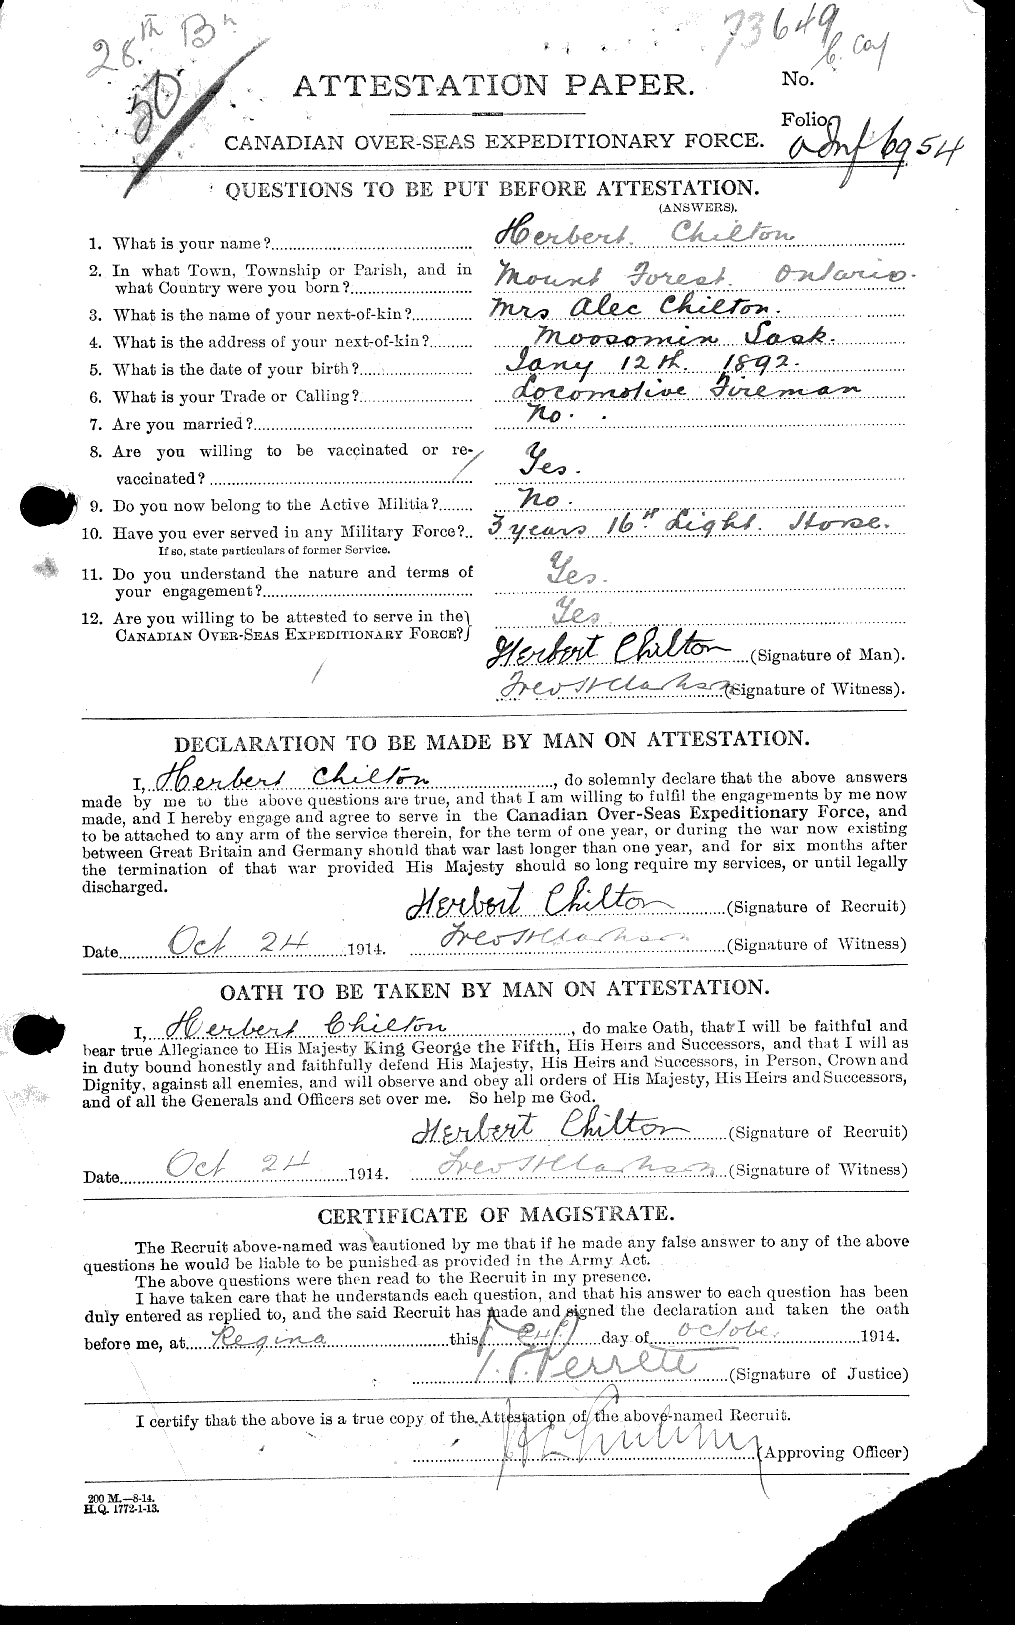 Dossiers du Personnel de la Première Guerre mondiale - CEC 014553a